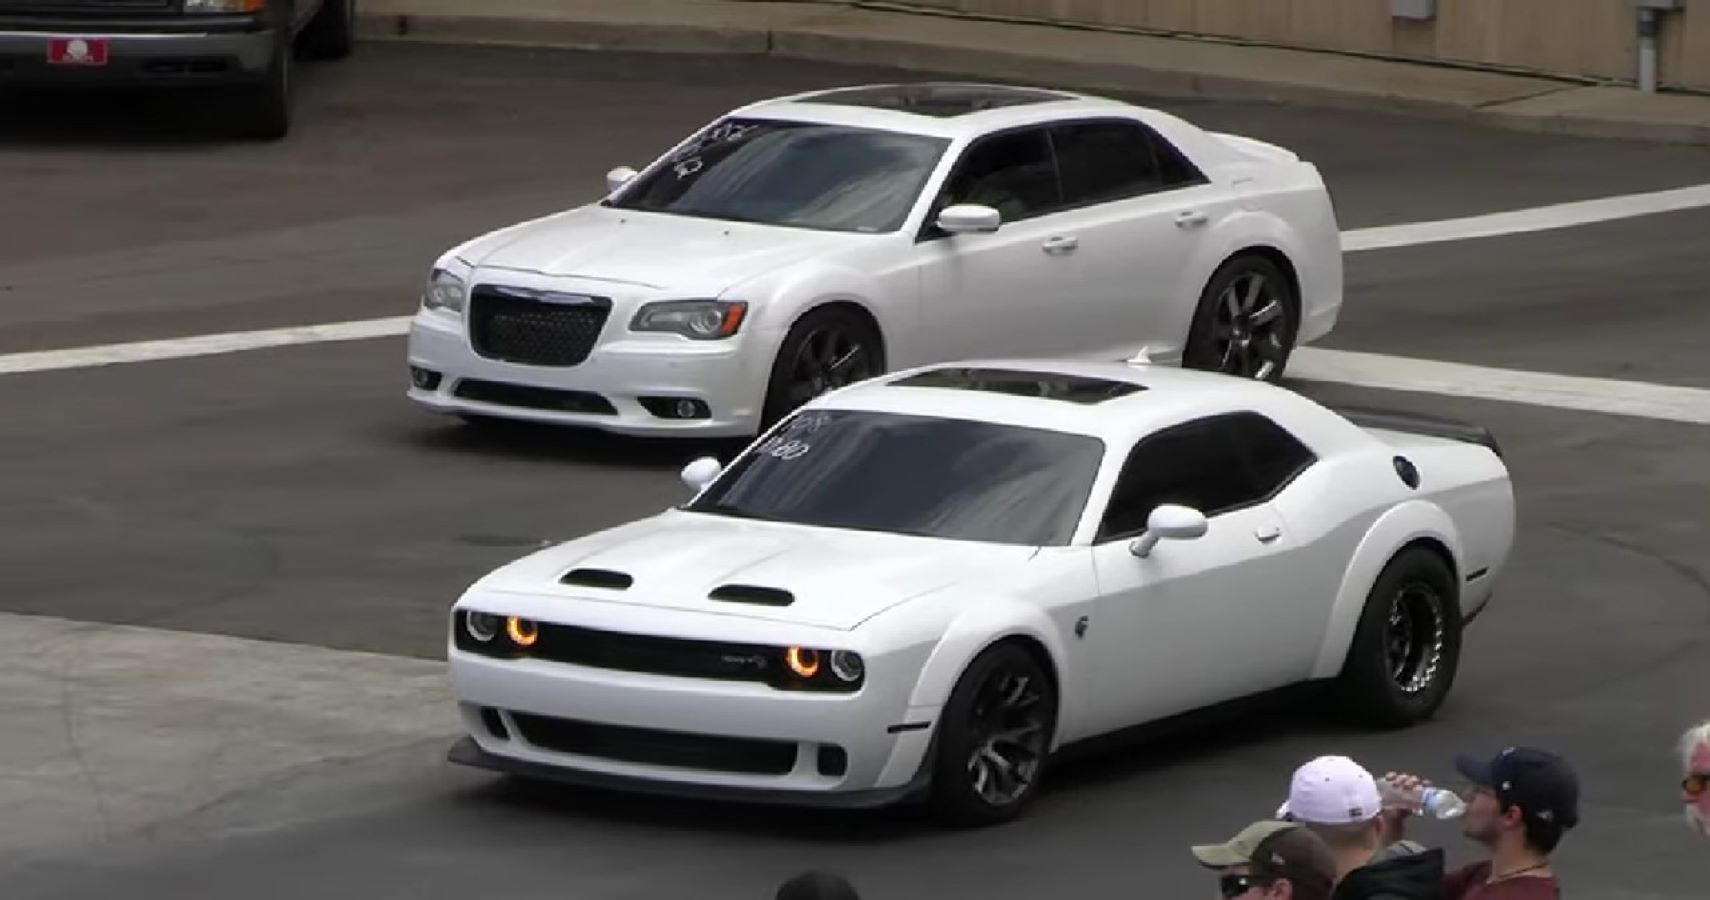 Drag Race Chrysler 300 vs Challenger Hellcat Redeye